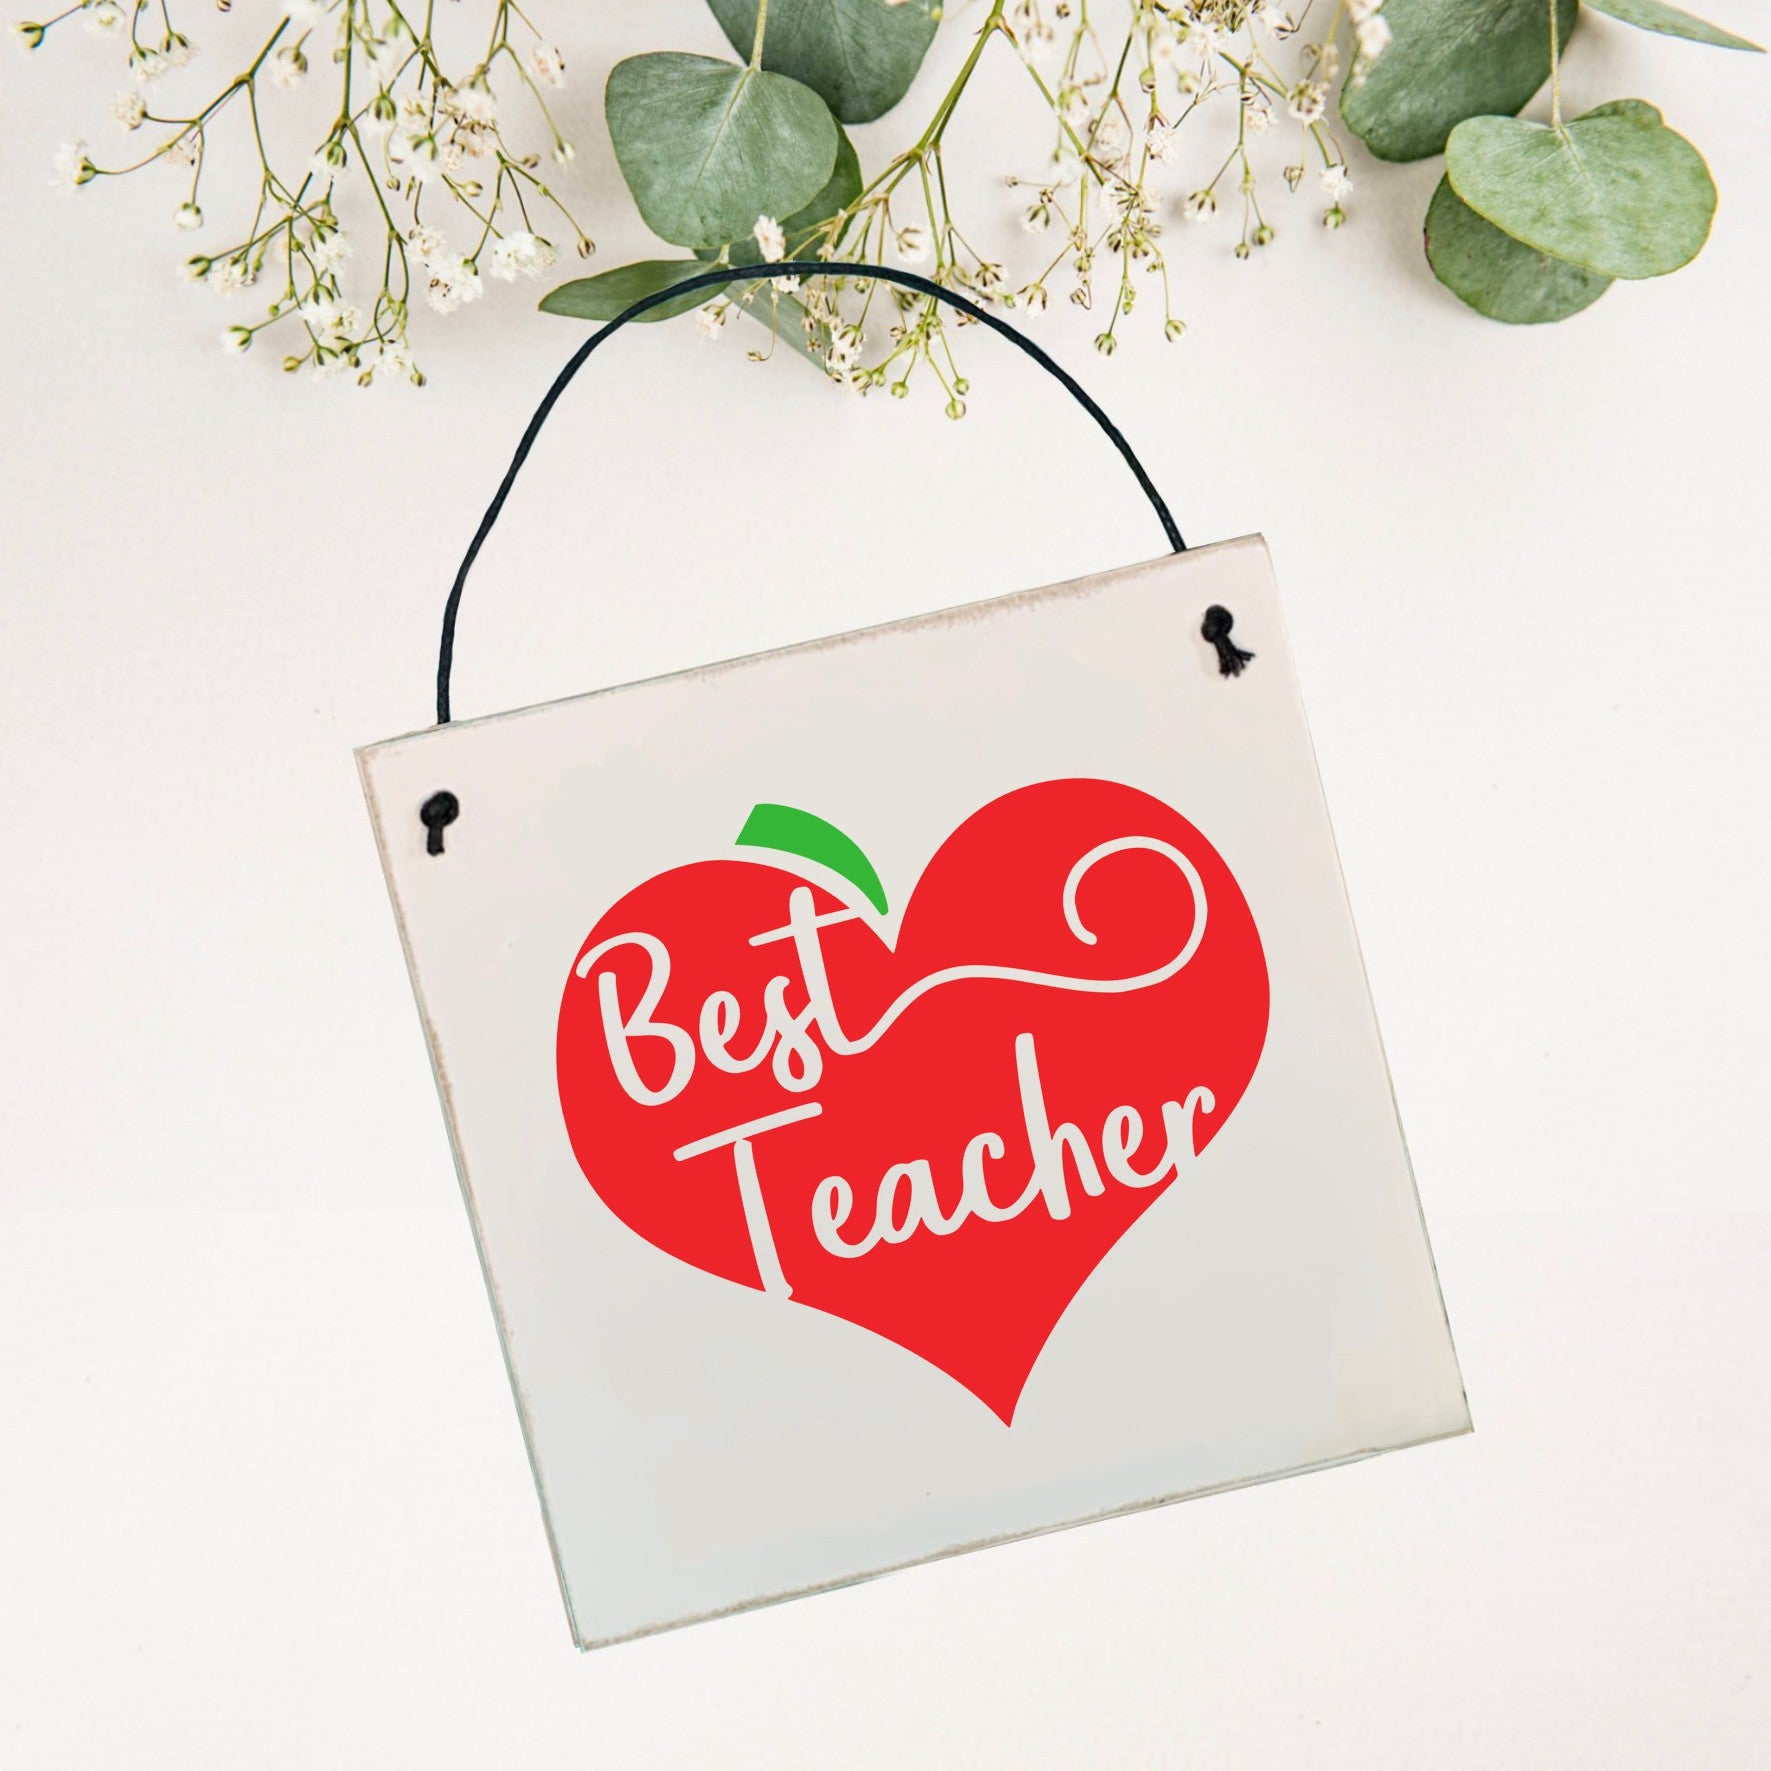 best teacher wall hanger sign with apple shape